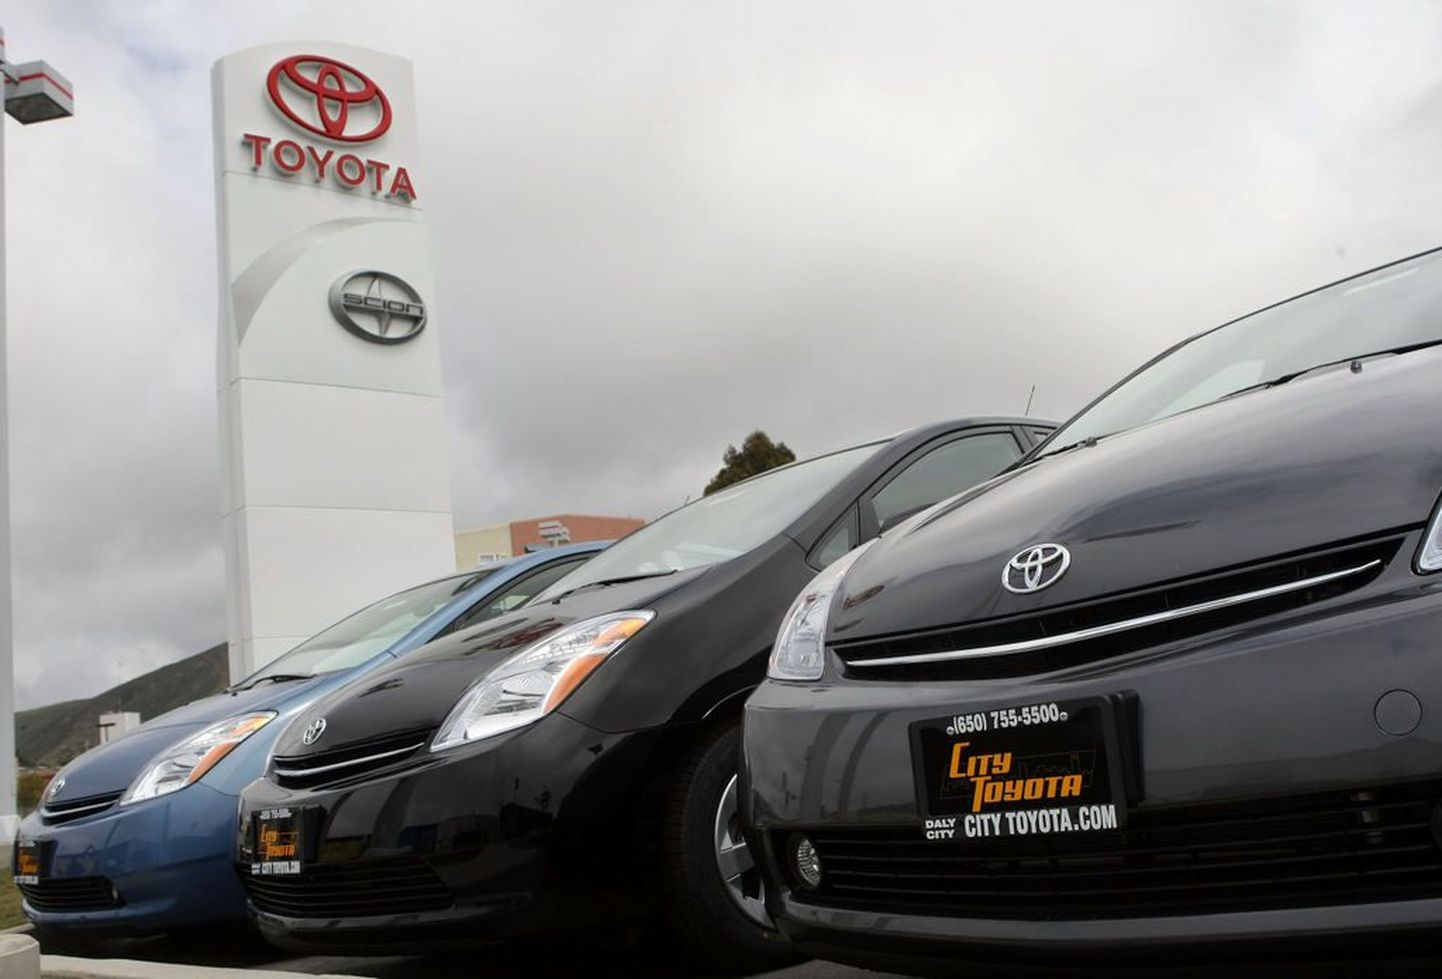 Venemaal müüdi mullu kõige enam Toyotasid.